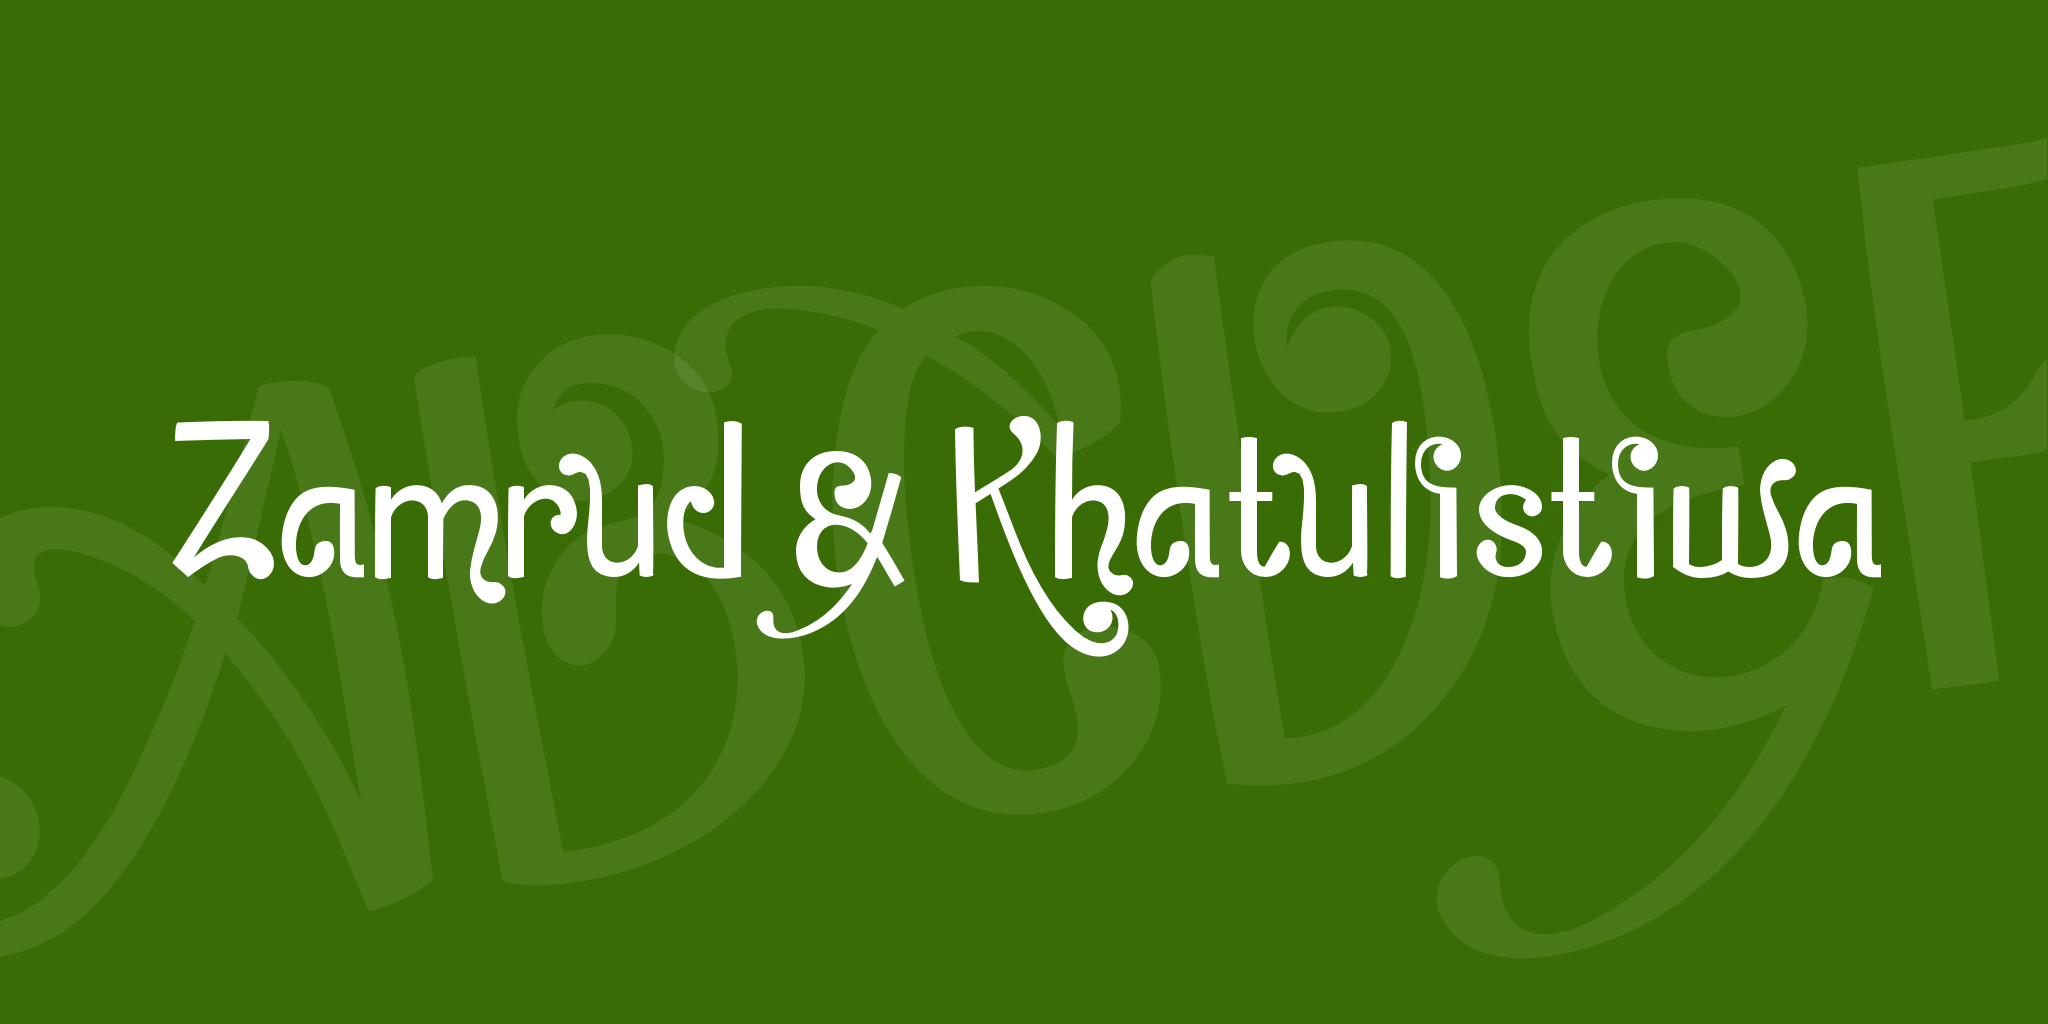 Zamrud & Khatulistiwa